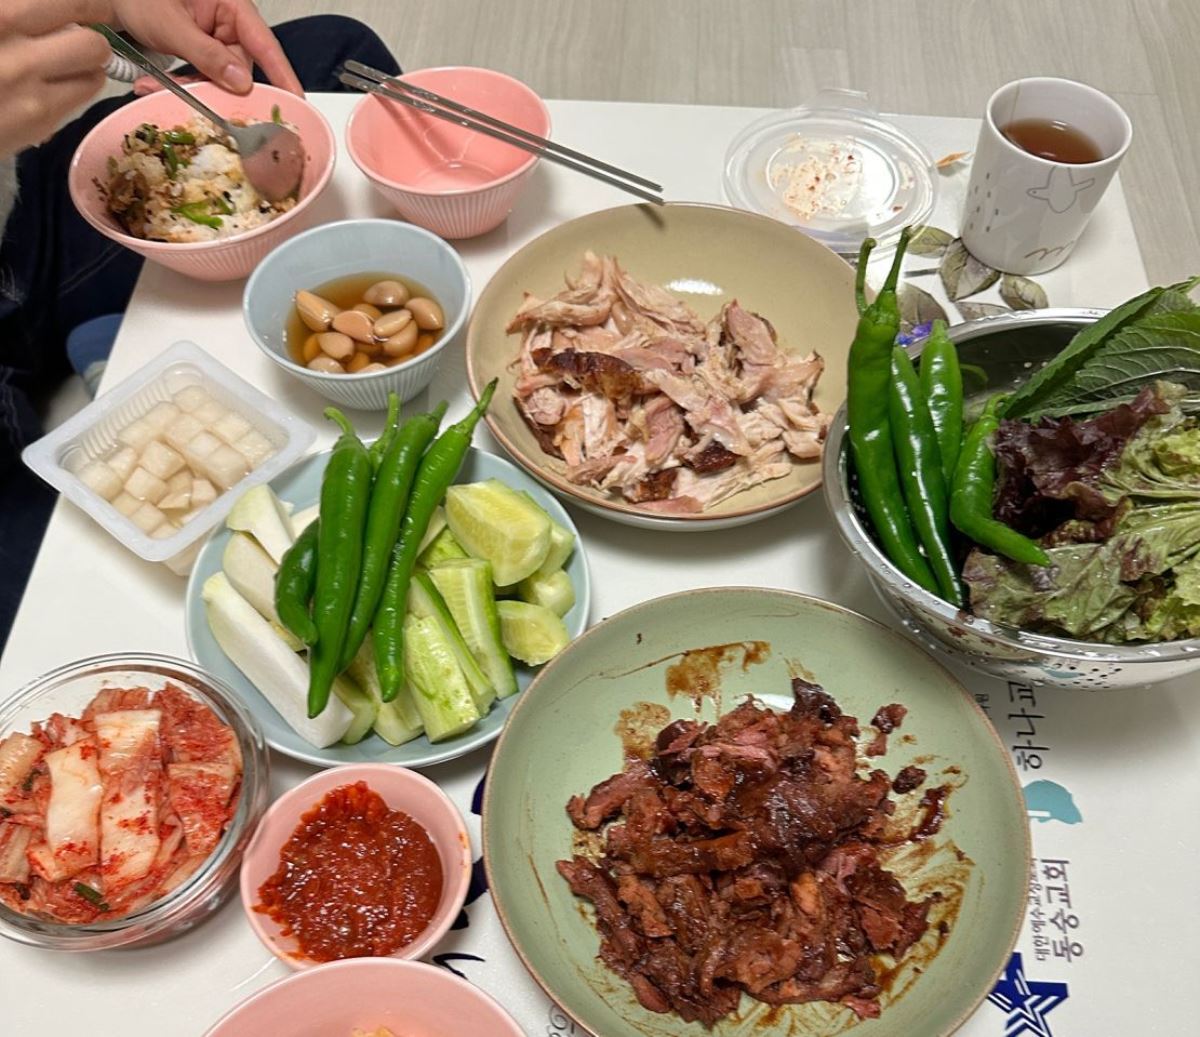 チェランさんが用意した夕食/Yoonjung Seo/CNN